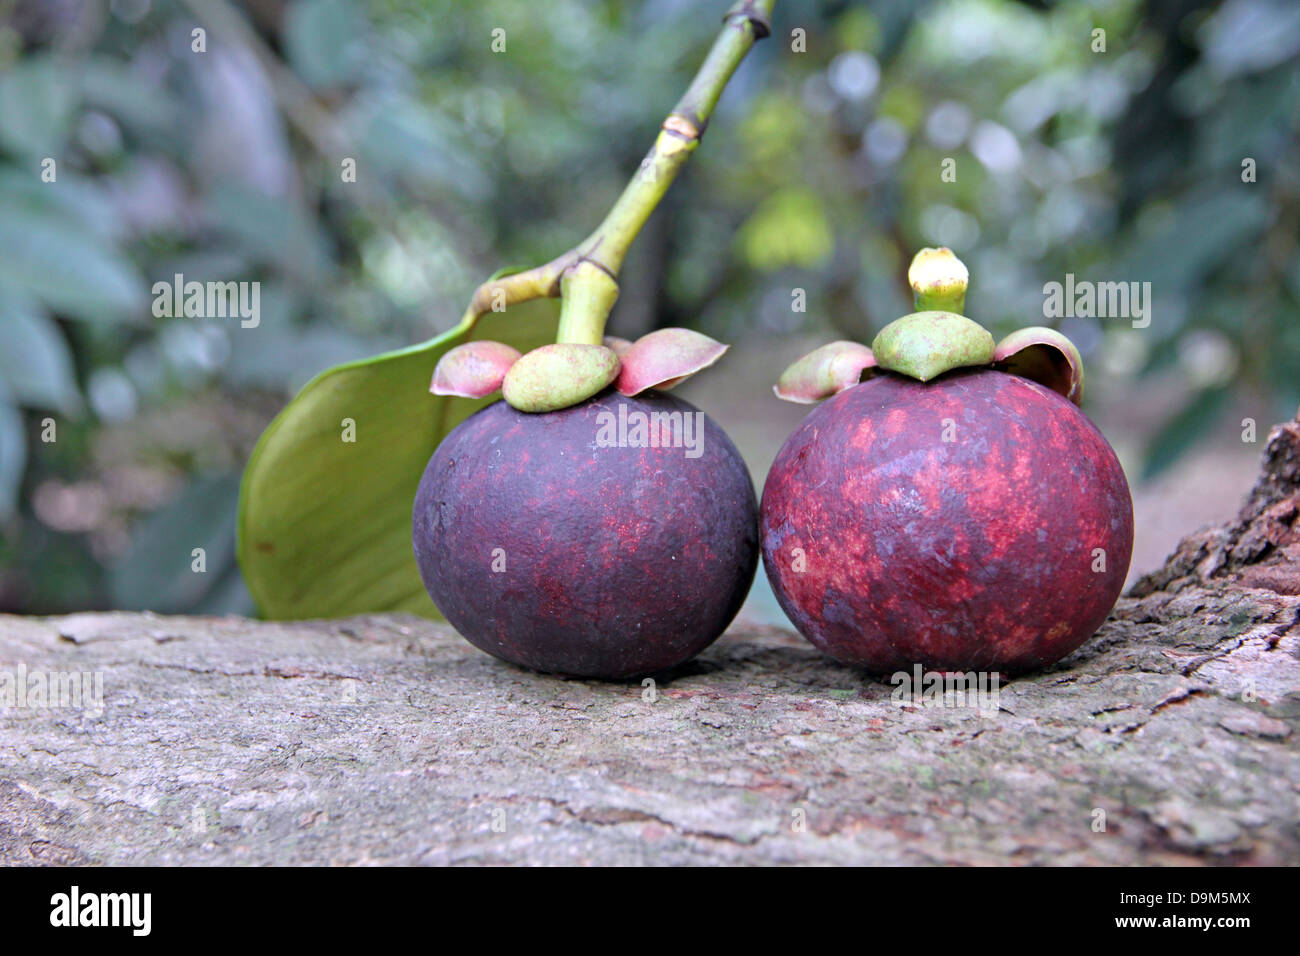 Le mangoustan est un fruit qui a un goût sucré,fruits domestiques en Thaïlande. Banque D'Images